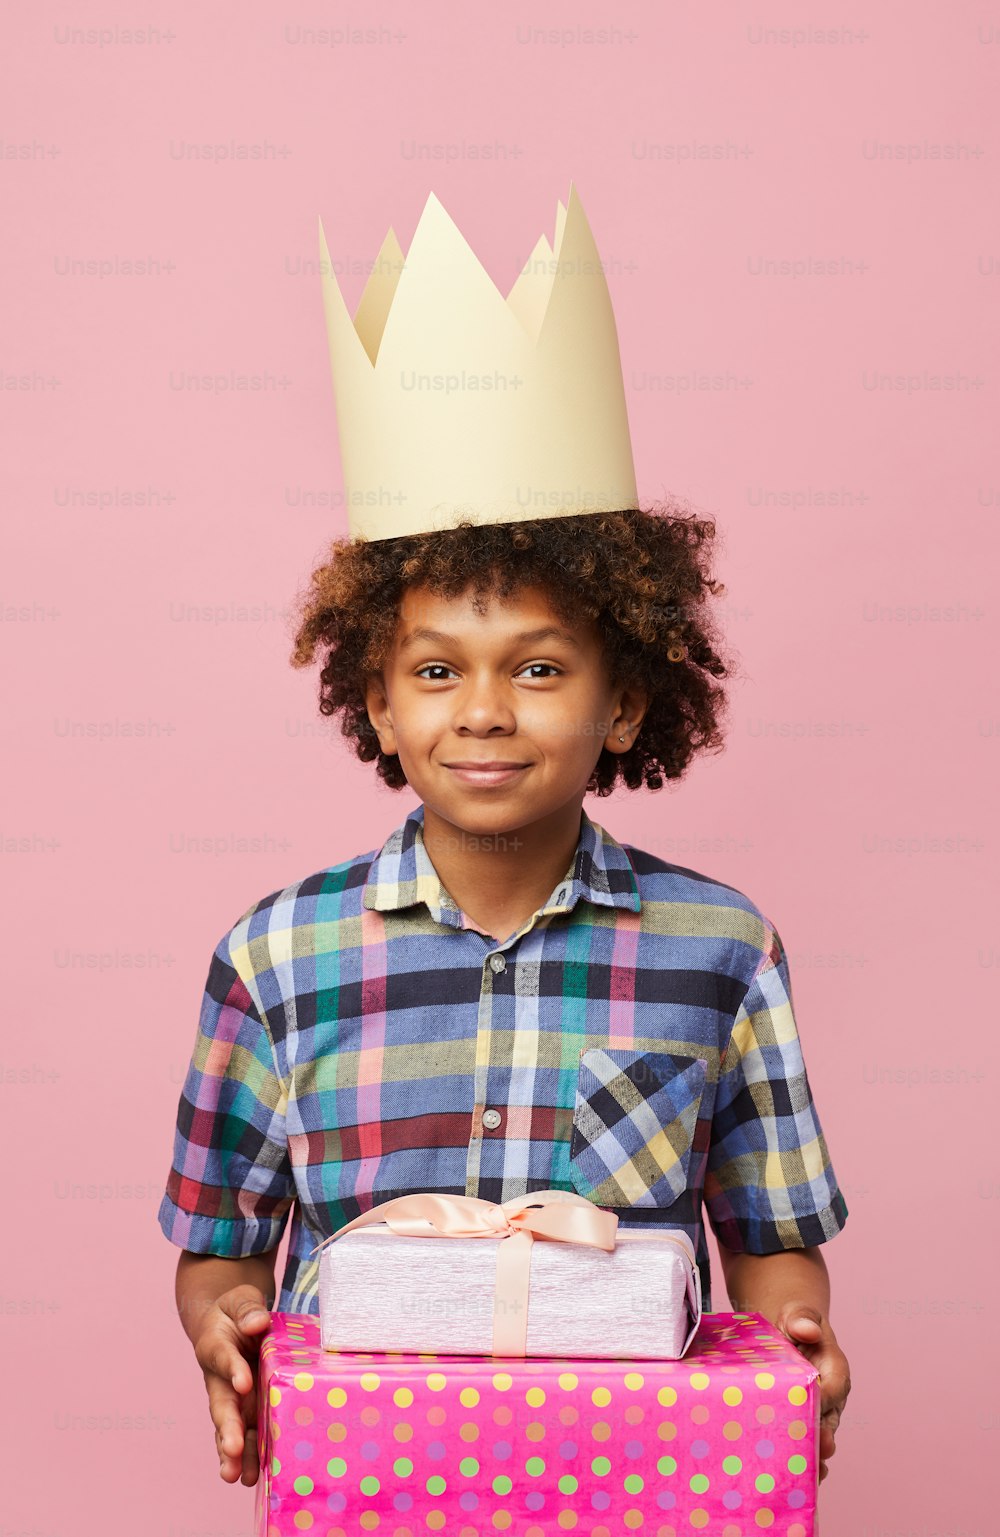 ピンクの背景にポーズをとるプレゼントを持つ笑顔のアフリカ系アメリカ人の少年のウエストアップポートレート、誕生日パーティーのコンセプト